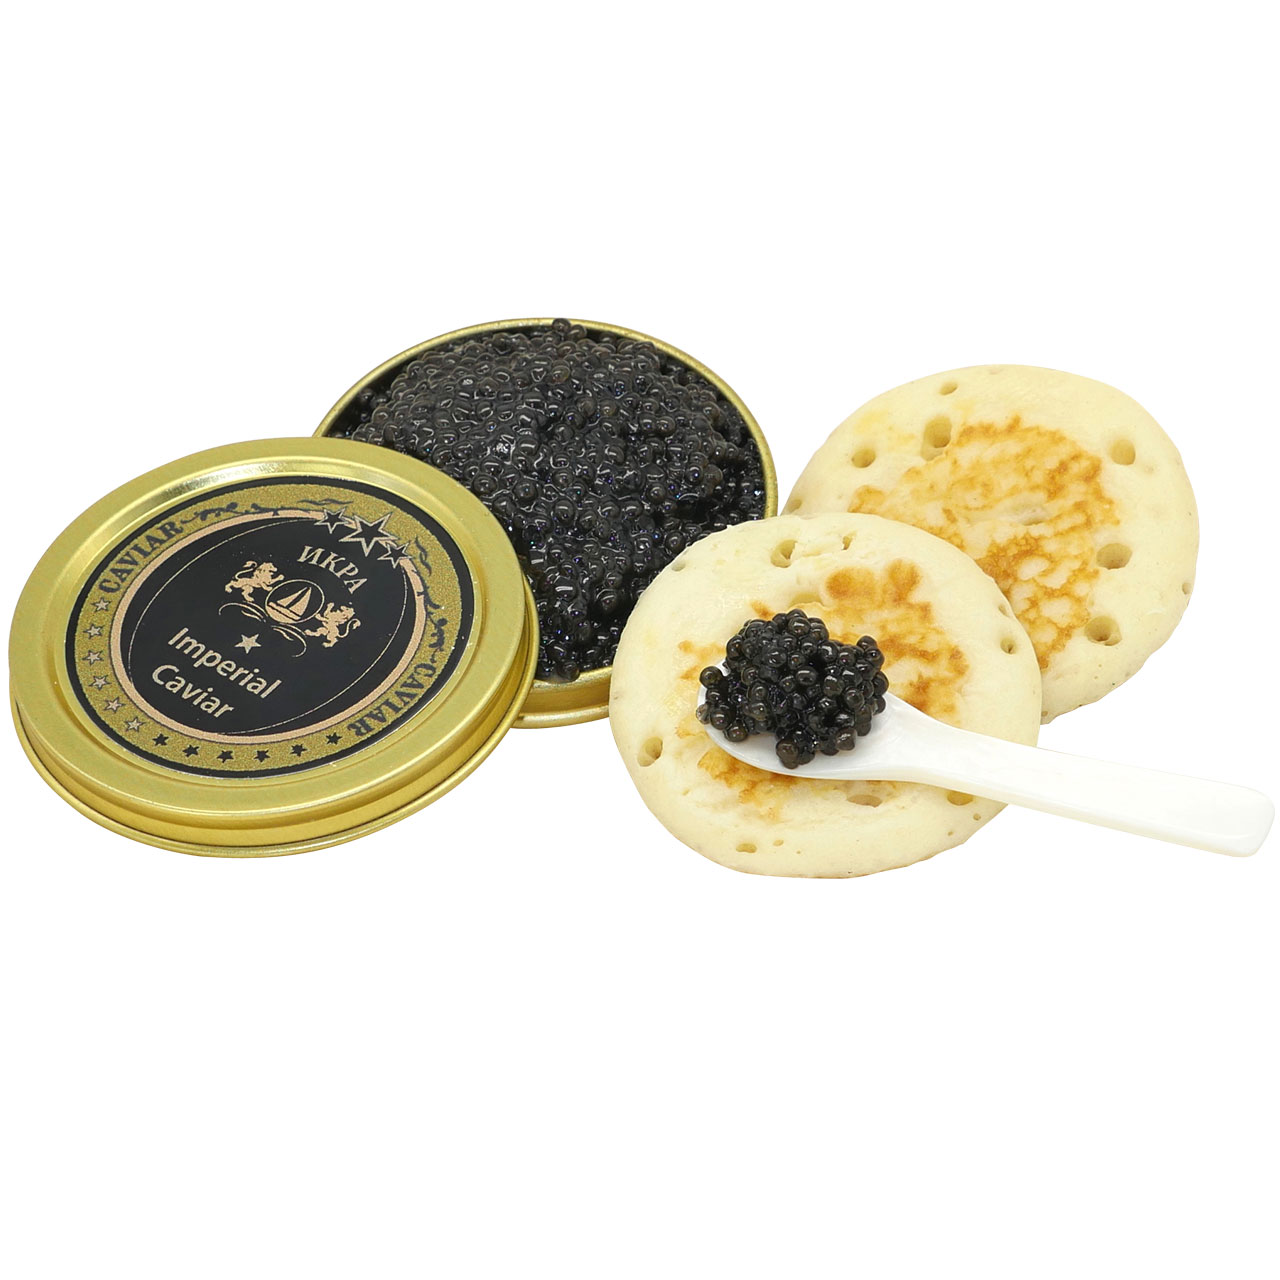 Imperial Kaviar